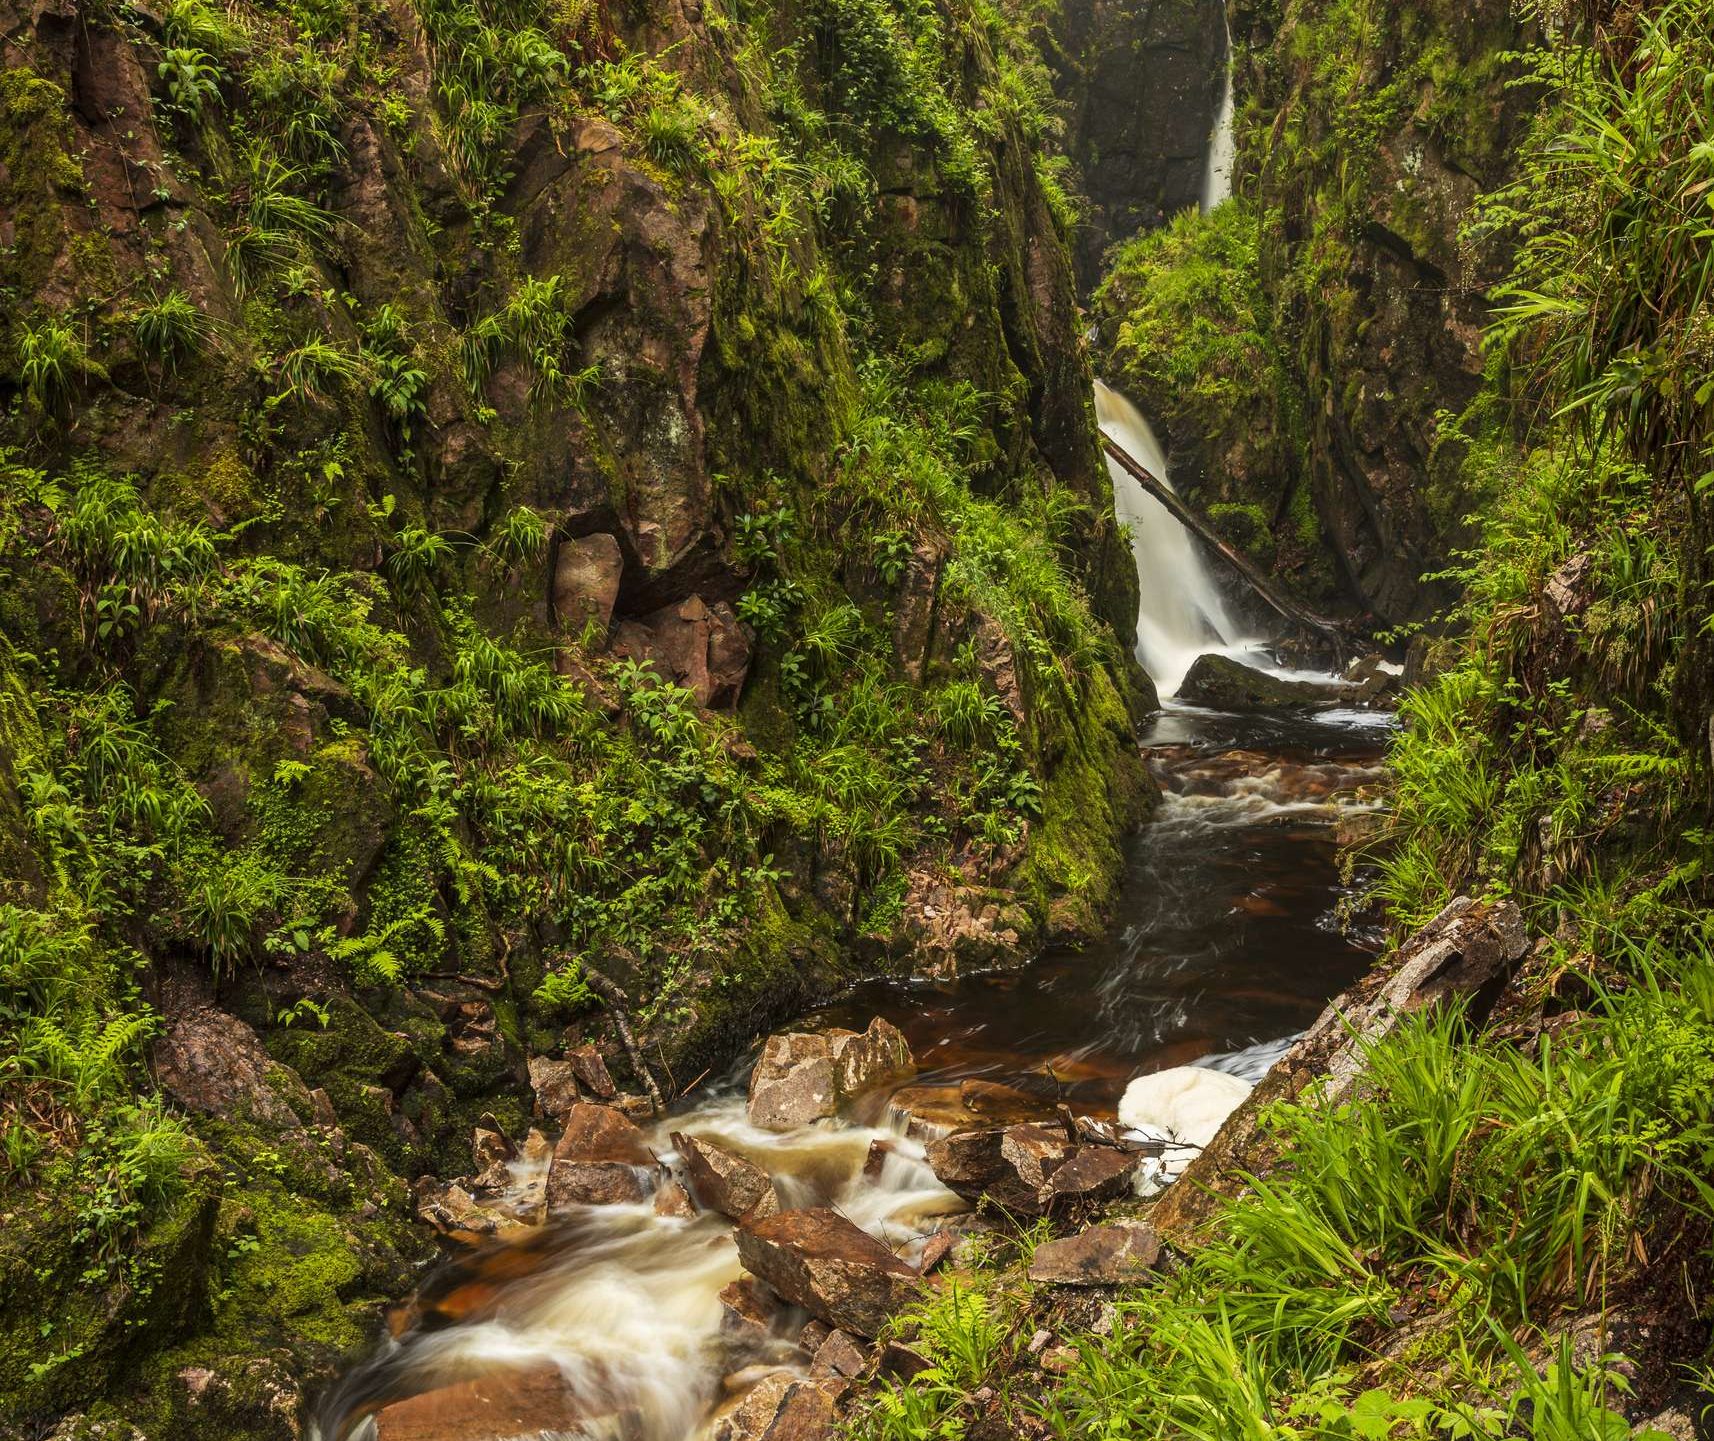 Waterfalls Cumbria